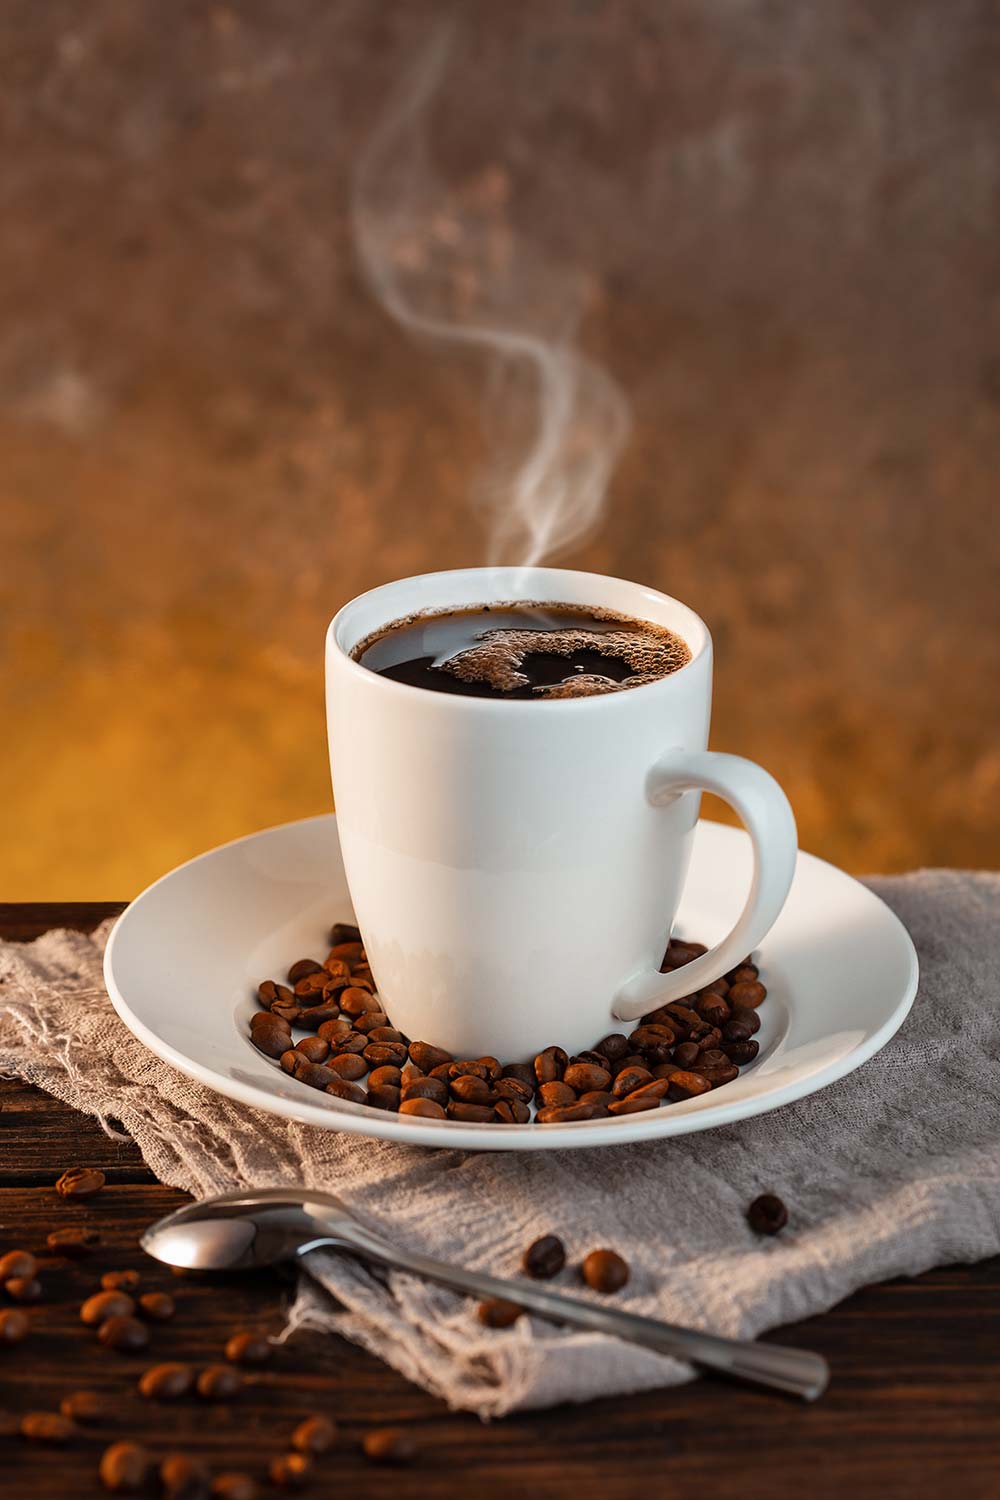 Vender café implica conocer los gustos y preferencias de tus consumidores